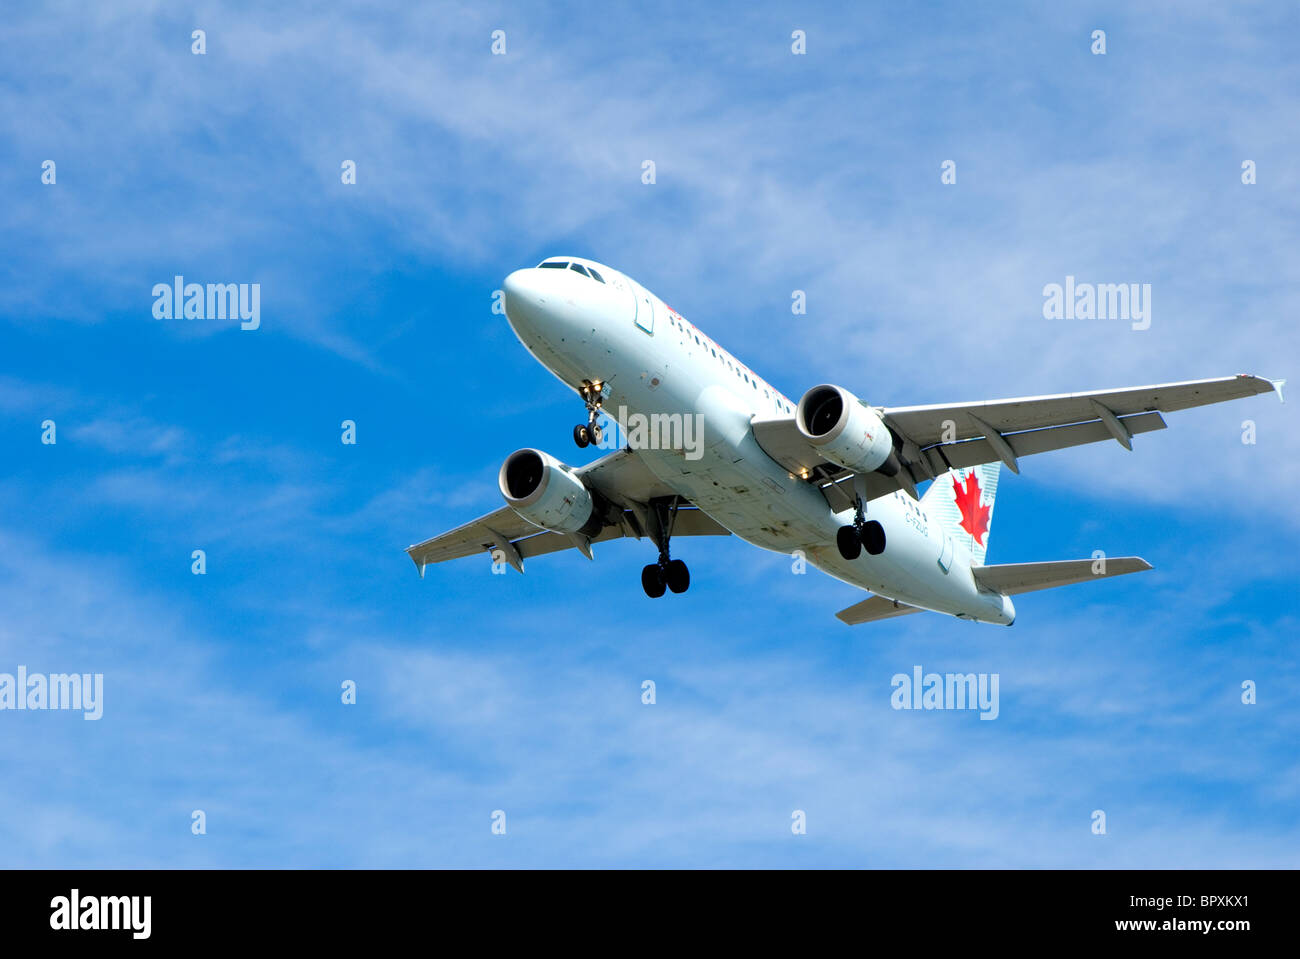 Air Canada piano con landing gear down in uscita per approccio finale all'aeroporto Foto Stock